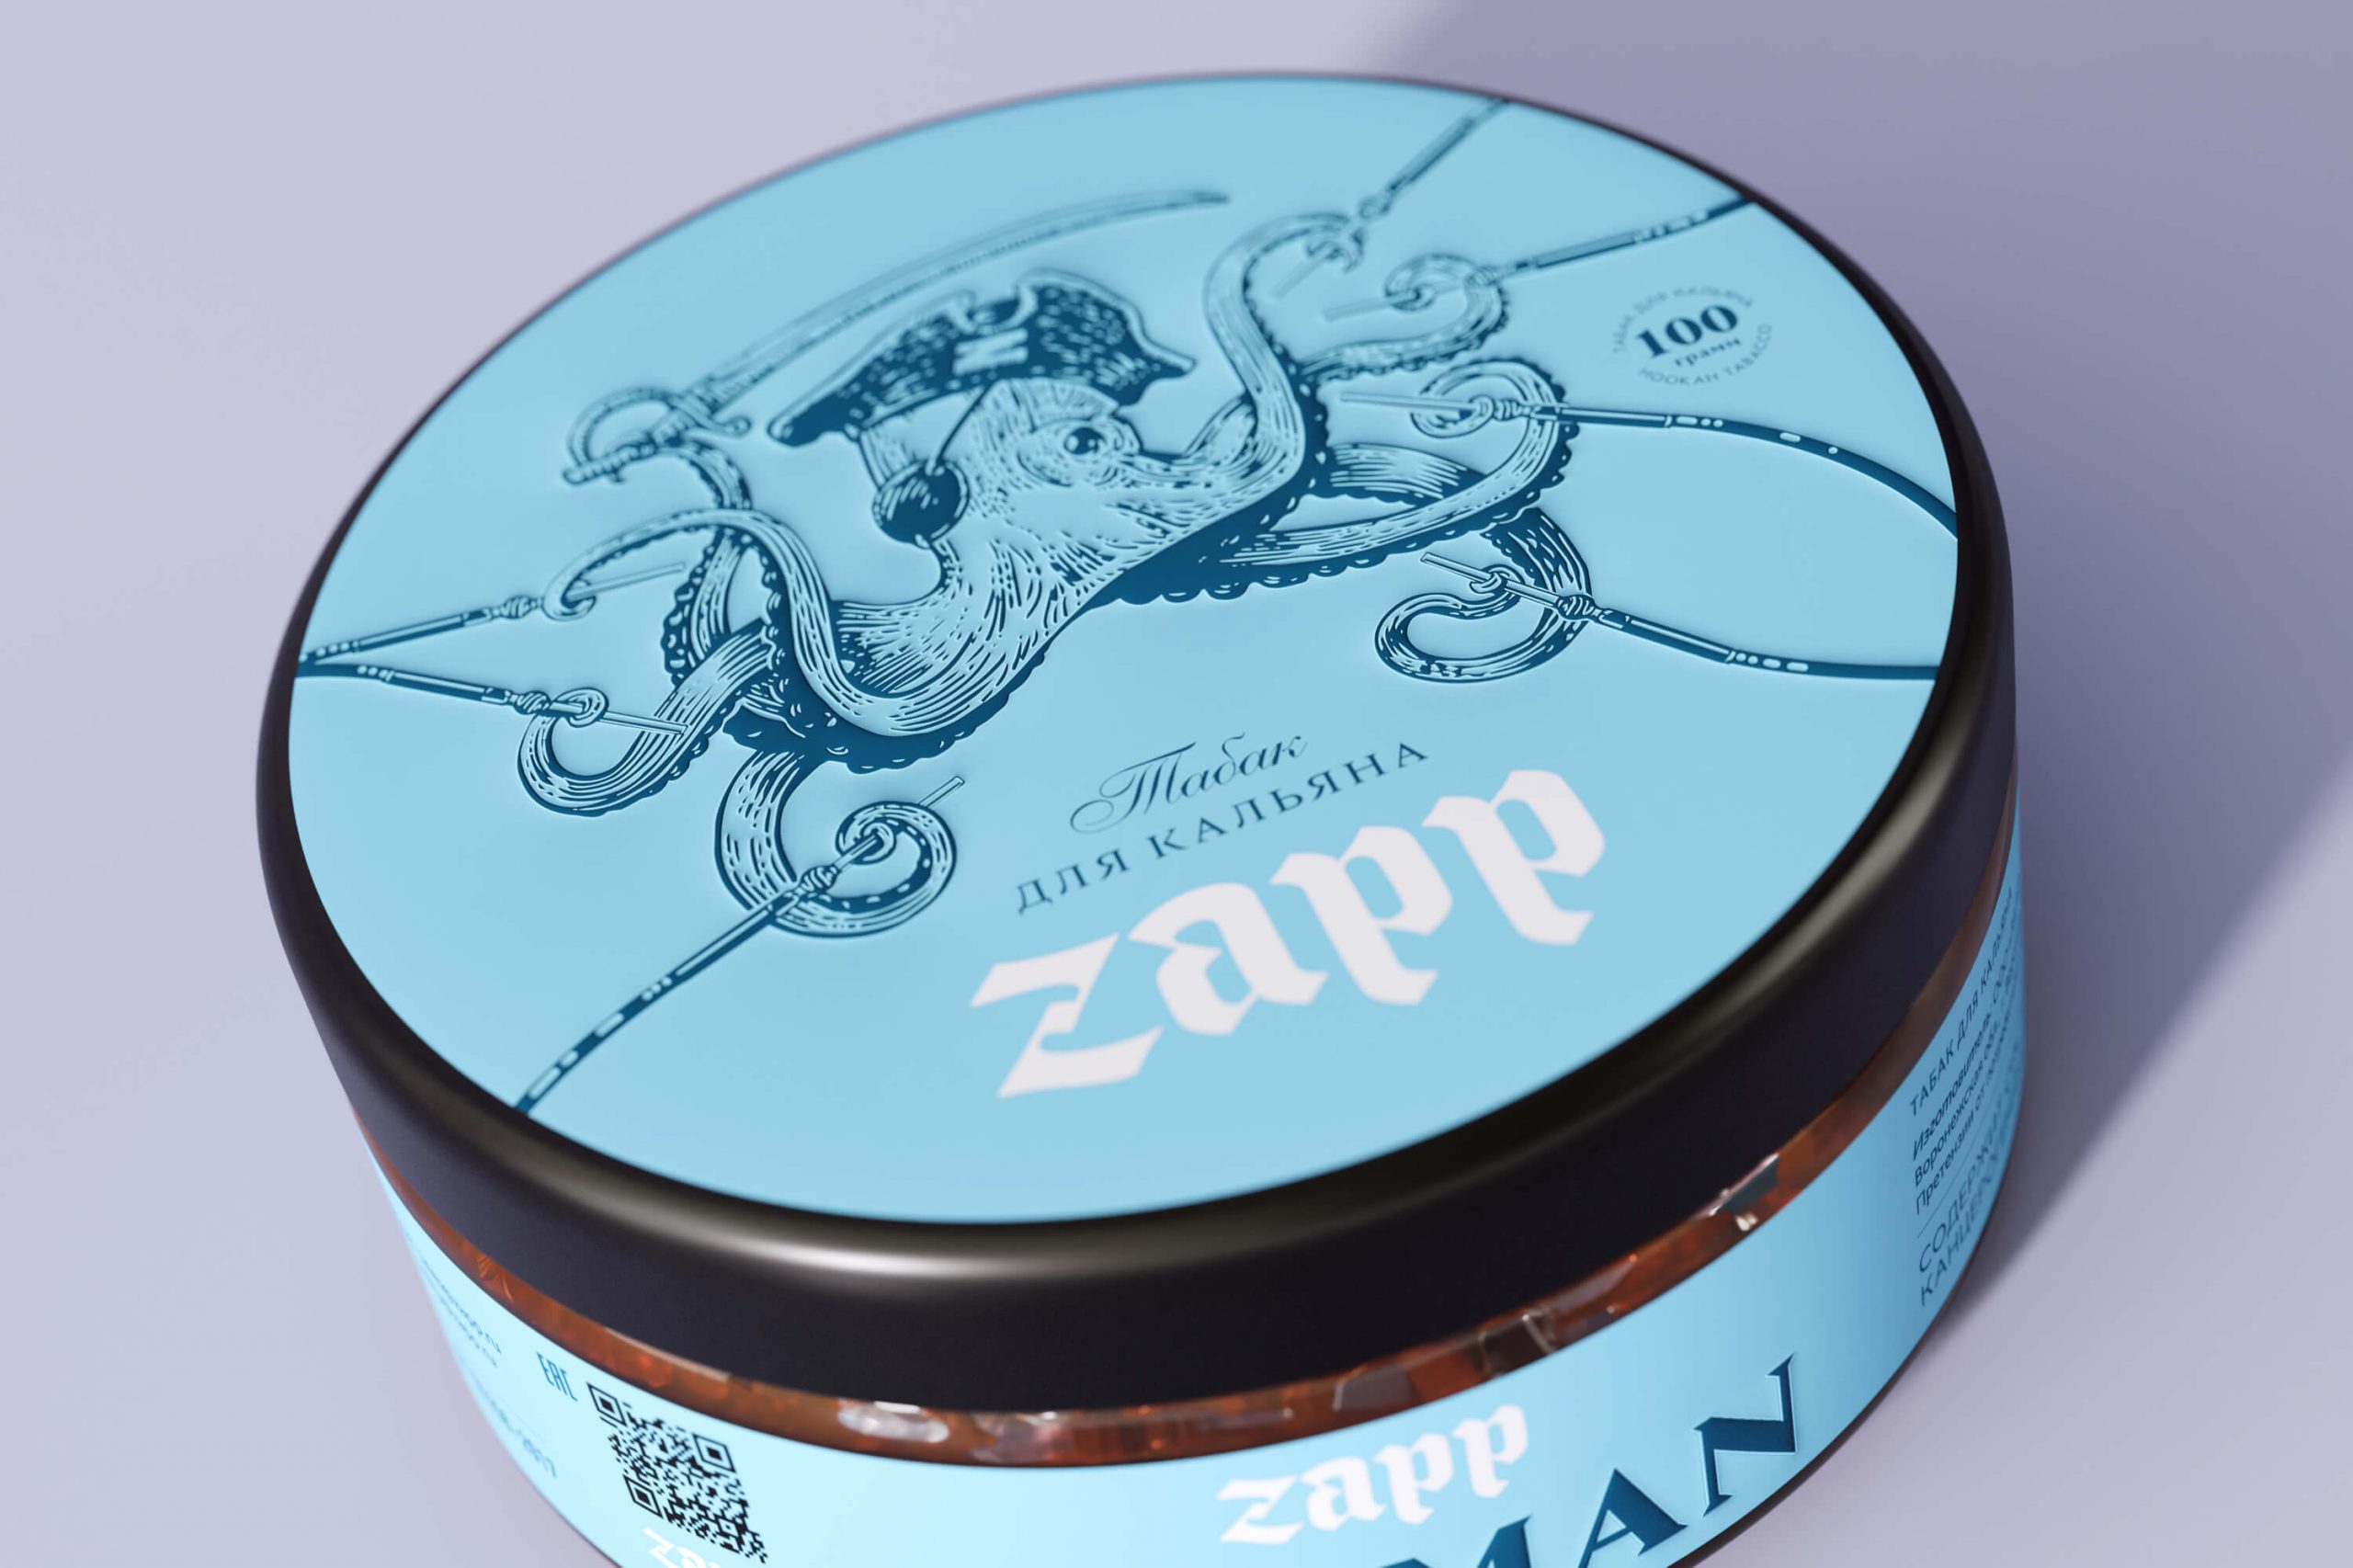 Разработка бренда и дизайн упаковки кальянных табаков Zapp.